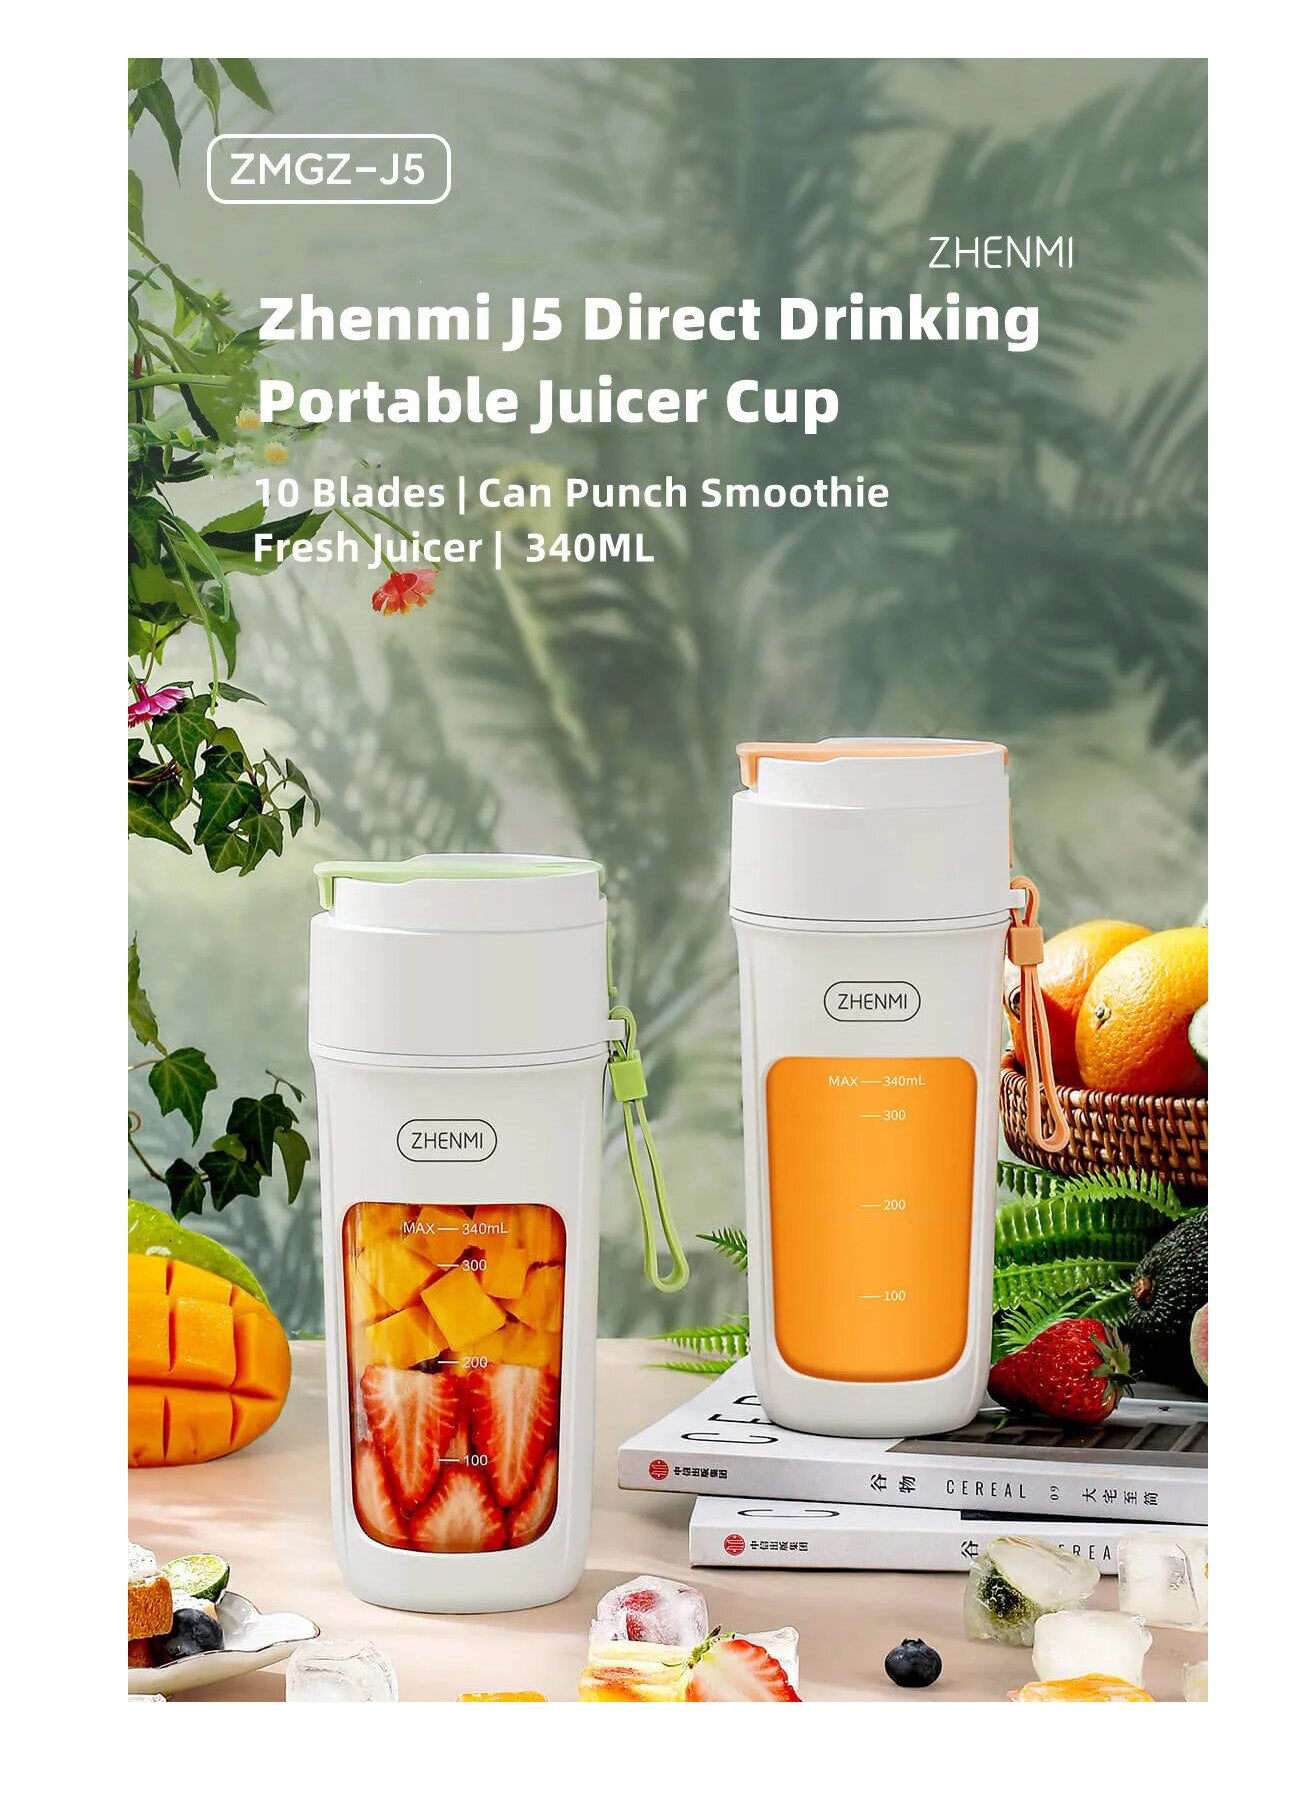 عصارة الشرب المباشرة المحمولة من Zhenmi J5 - أبيض وأخضر